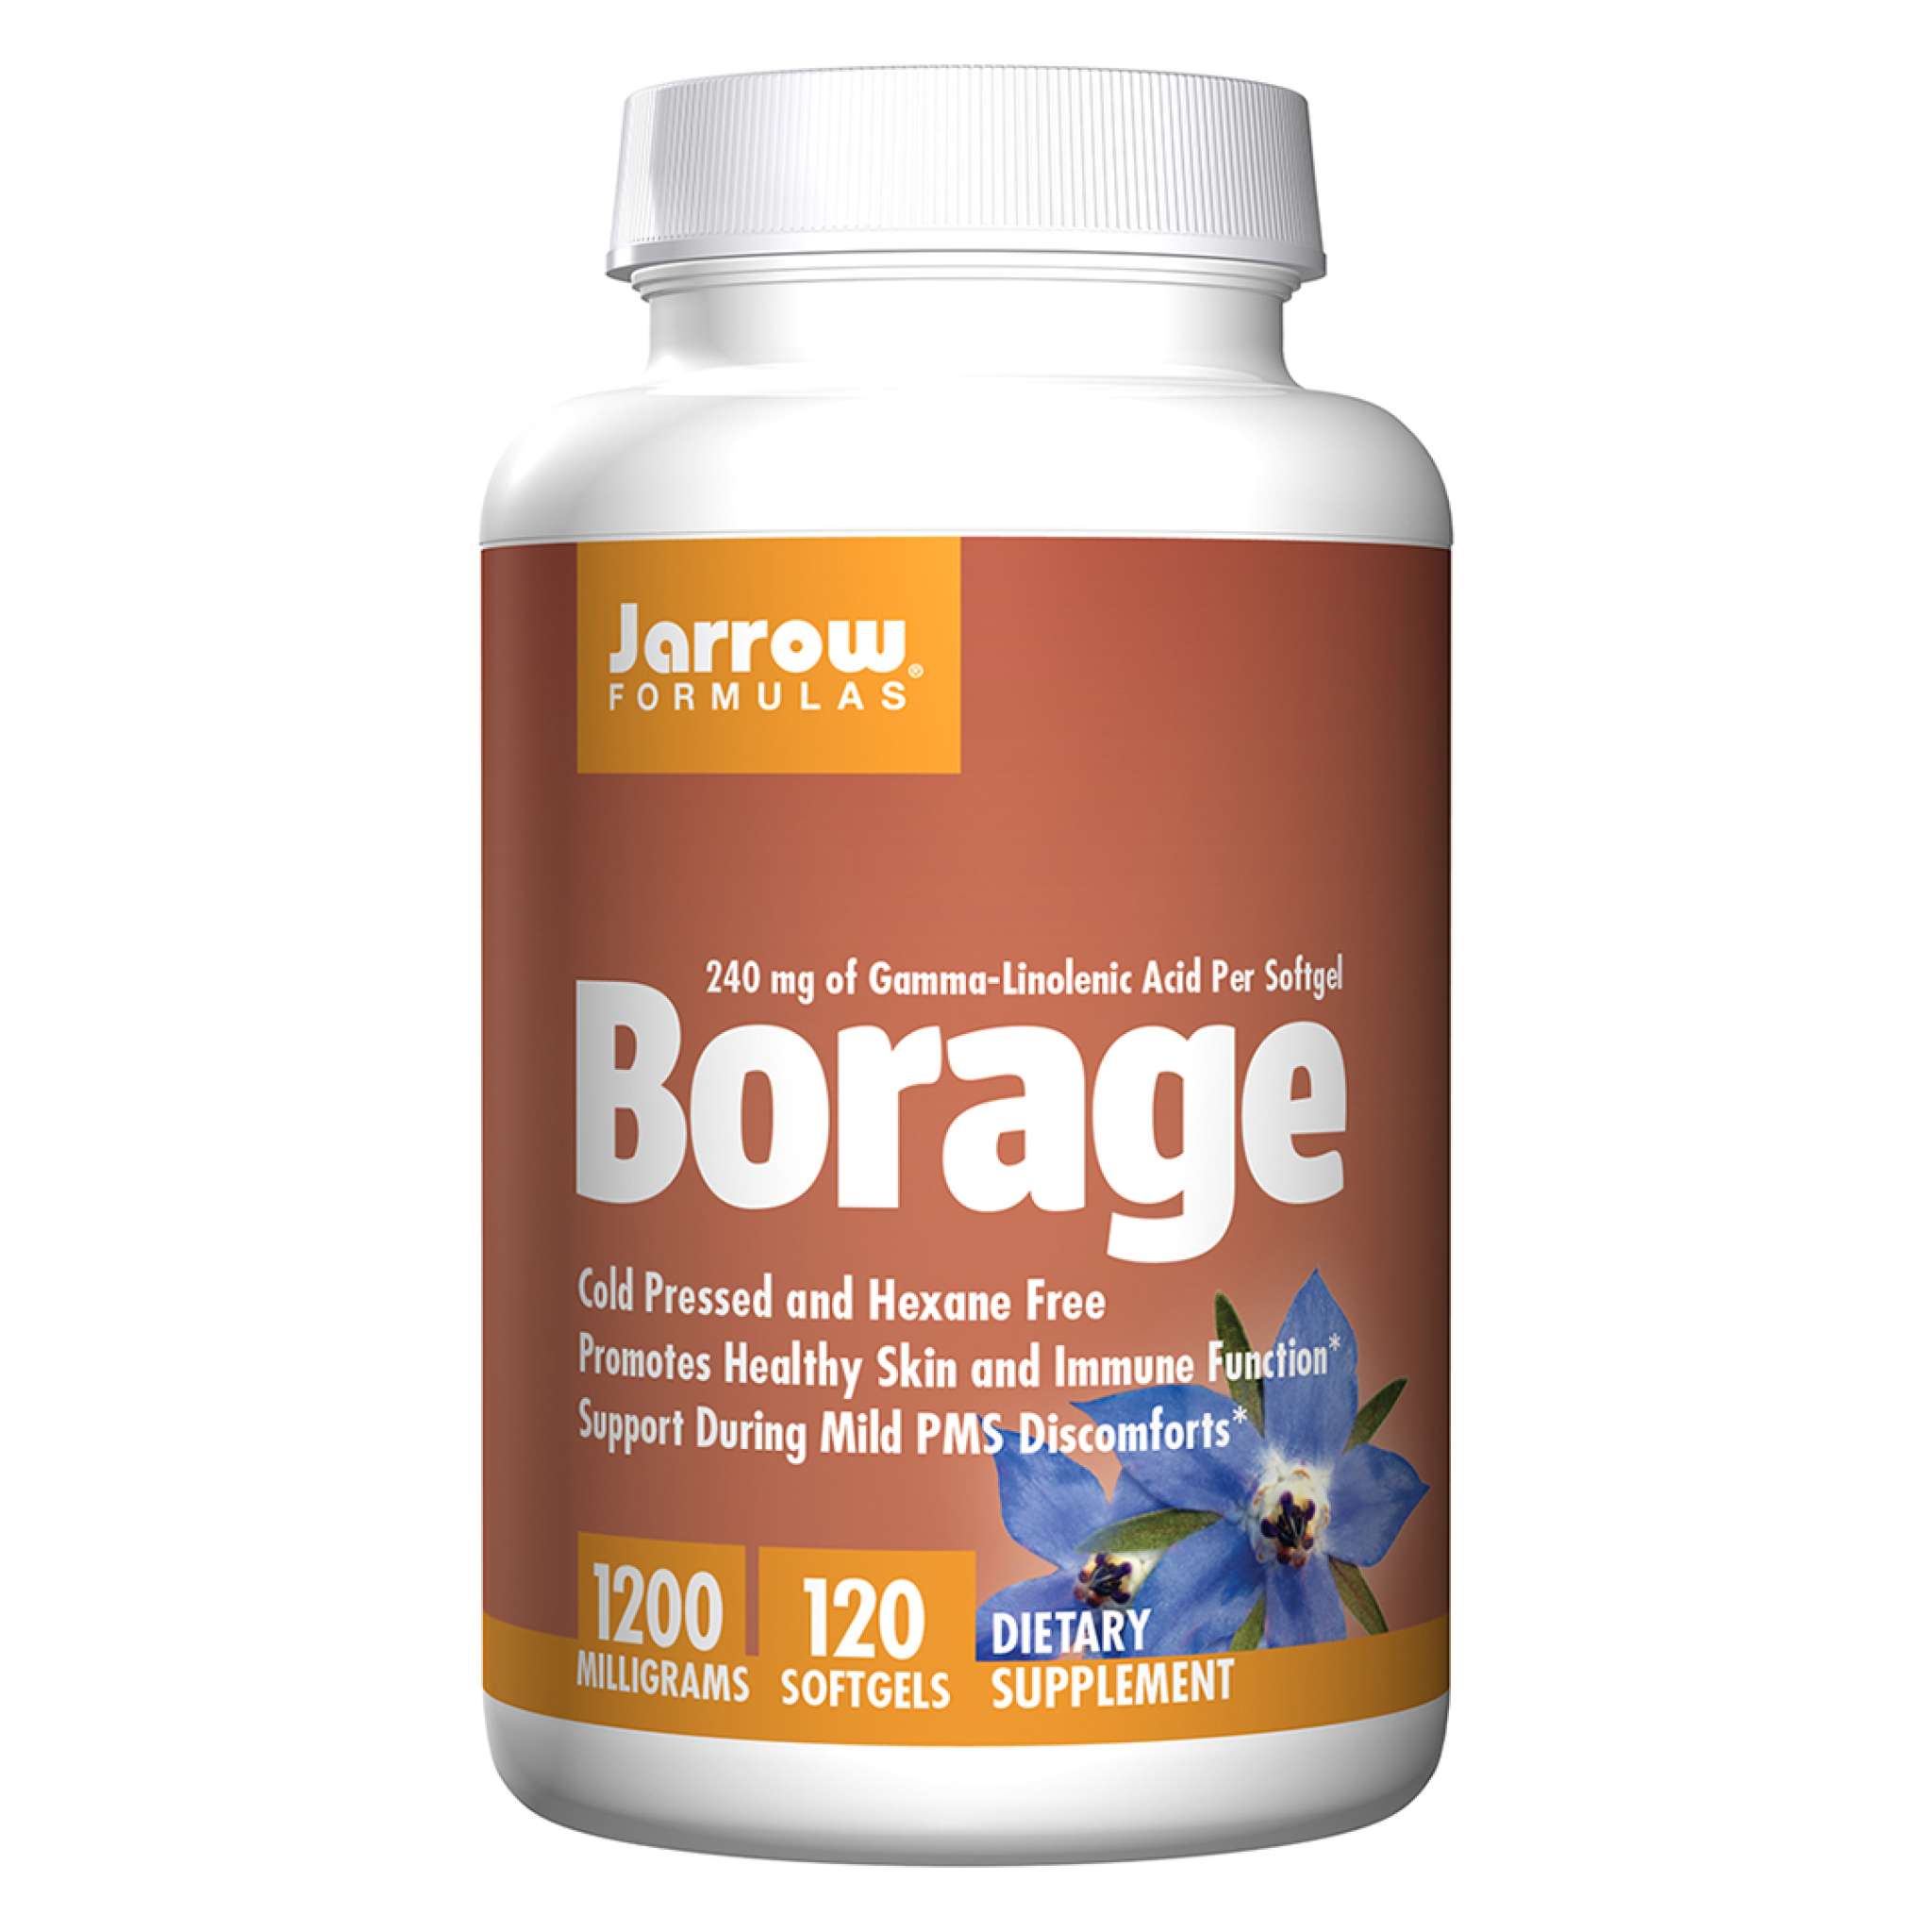 Jarrow Formulas - Borage Oil Gla 240